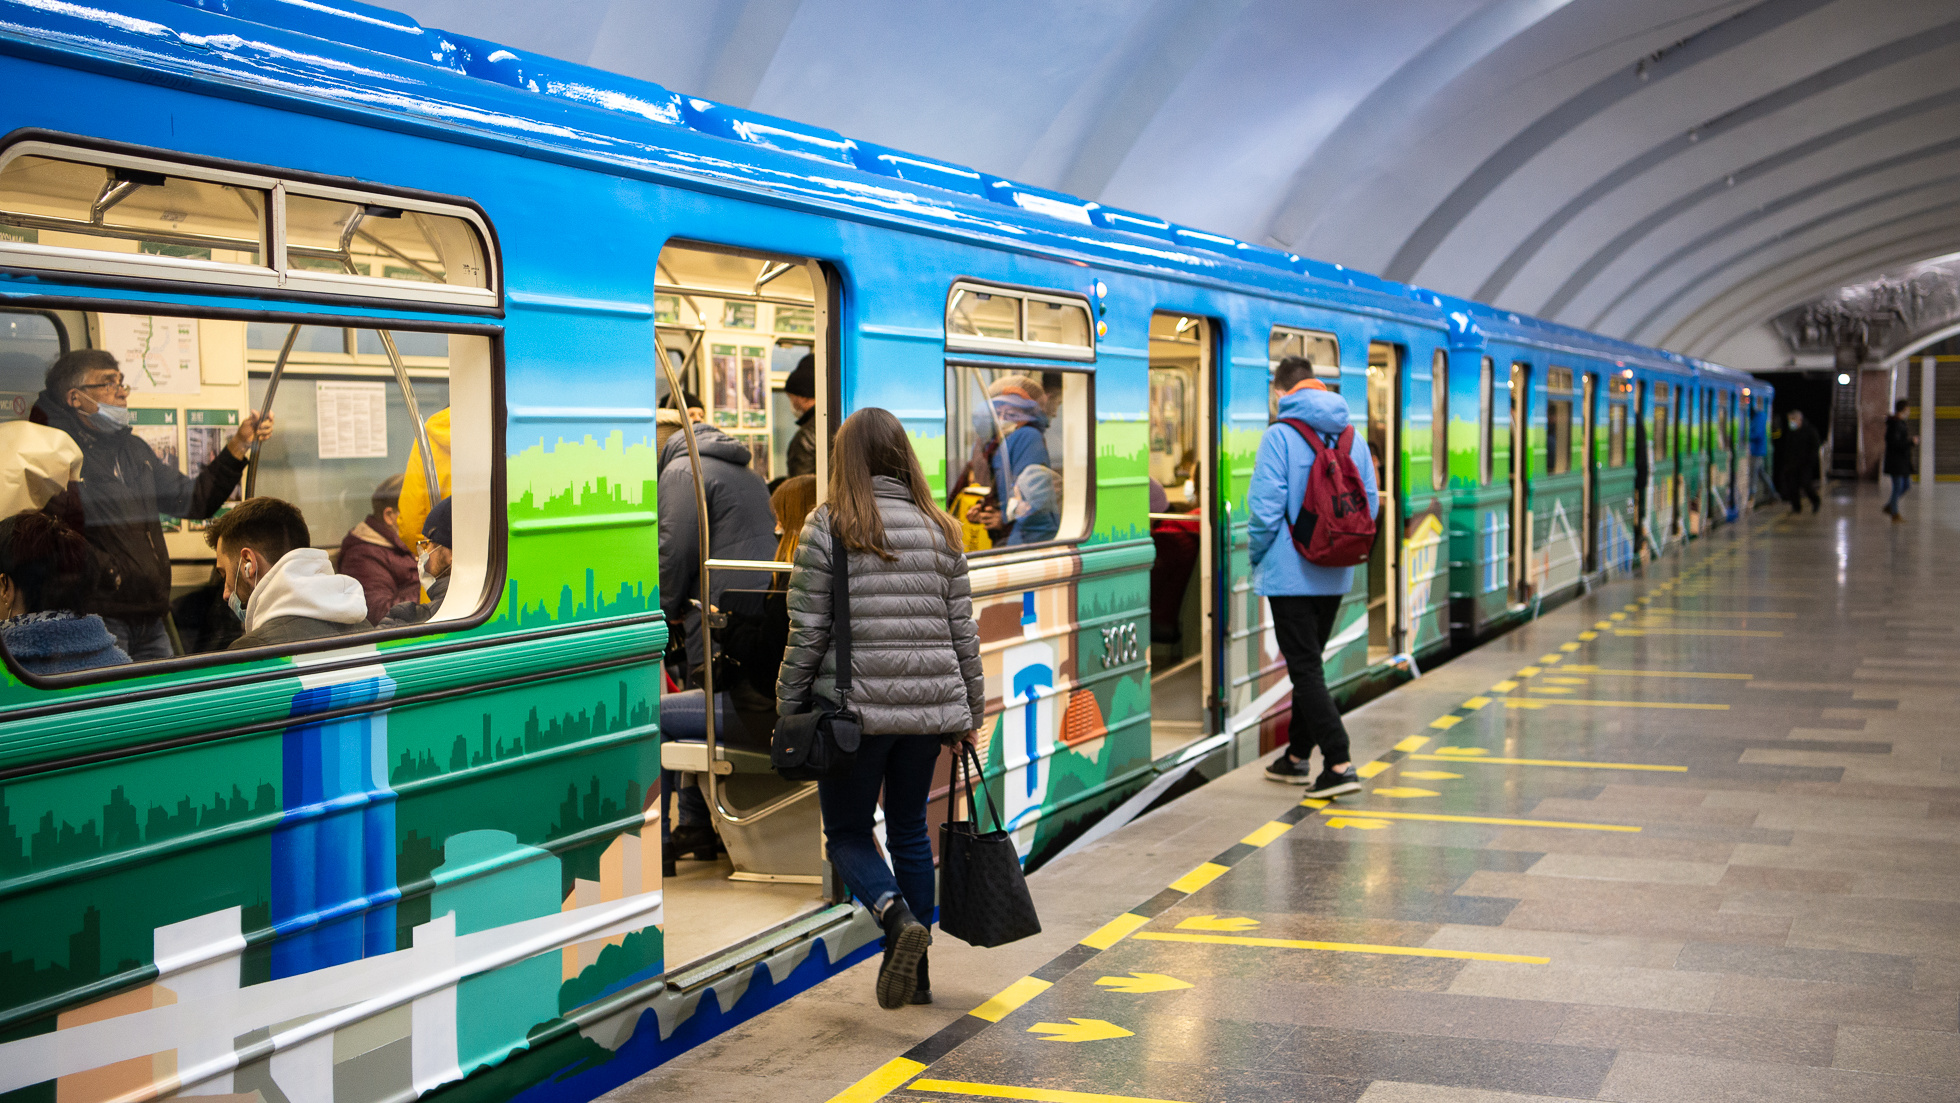 Снаружи граффити, внутри — фотовыставка: в екатеринбургском метро начал курсировать юбилейный поезд